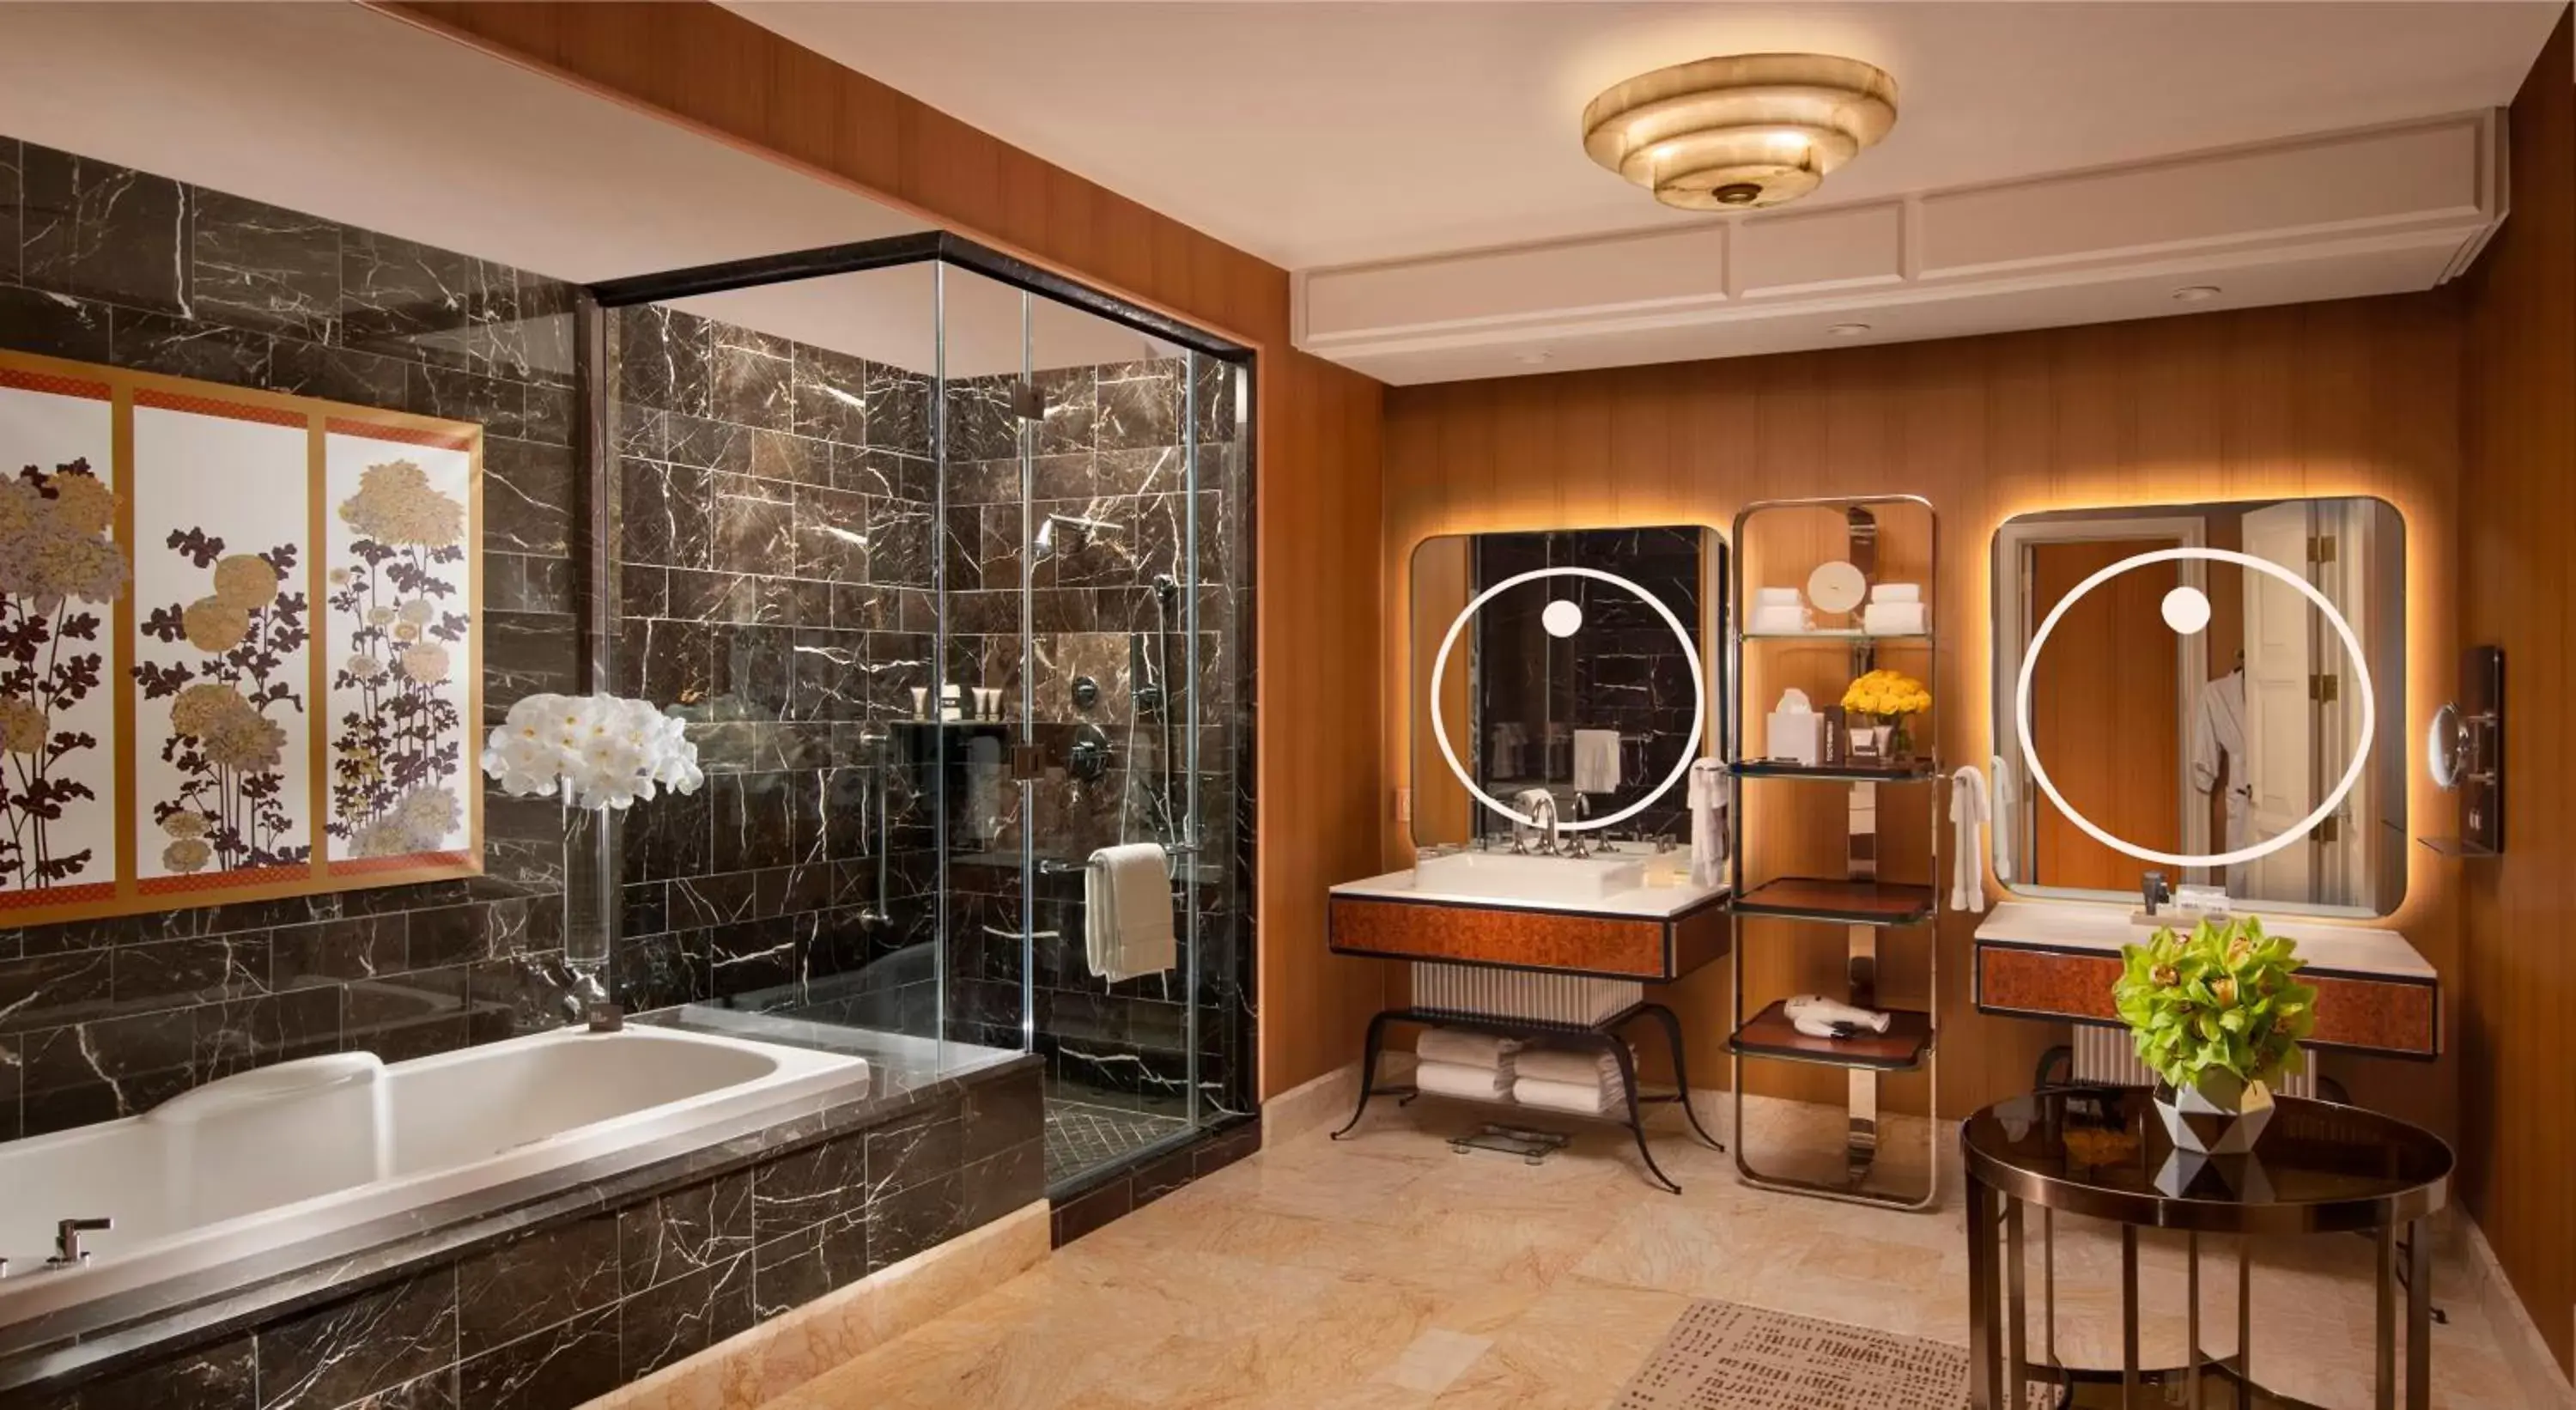 Shower, Bathroom in Wynn Las Vegas